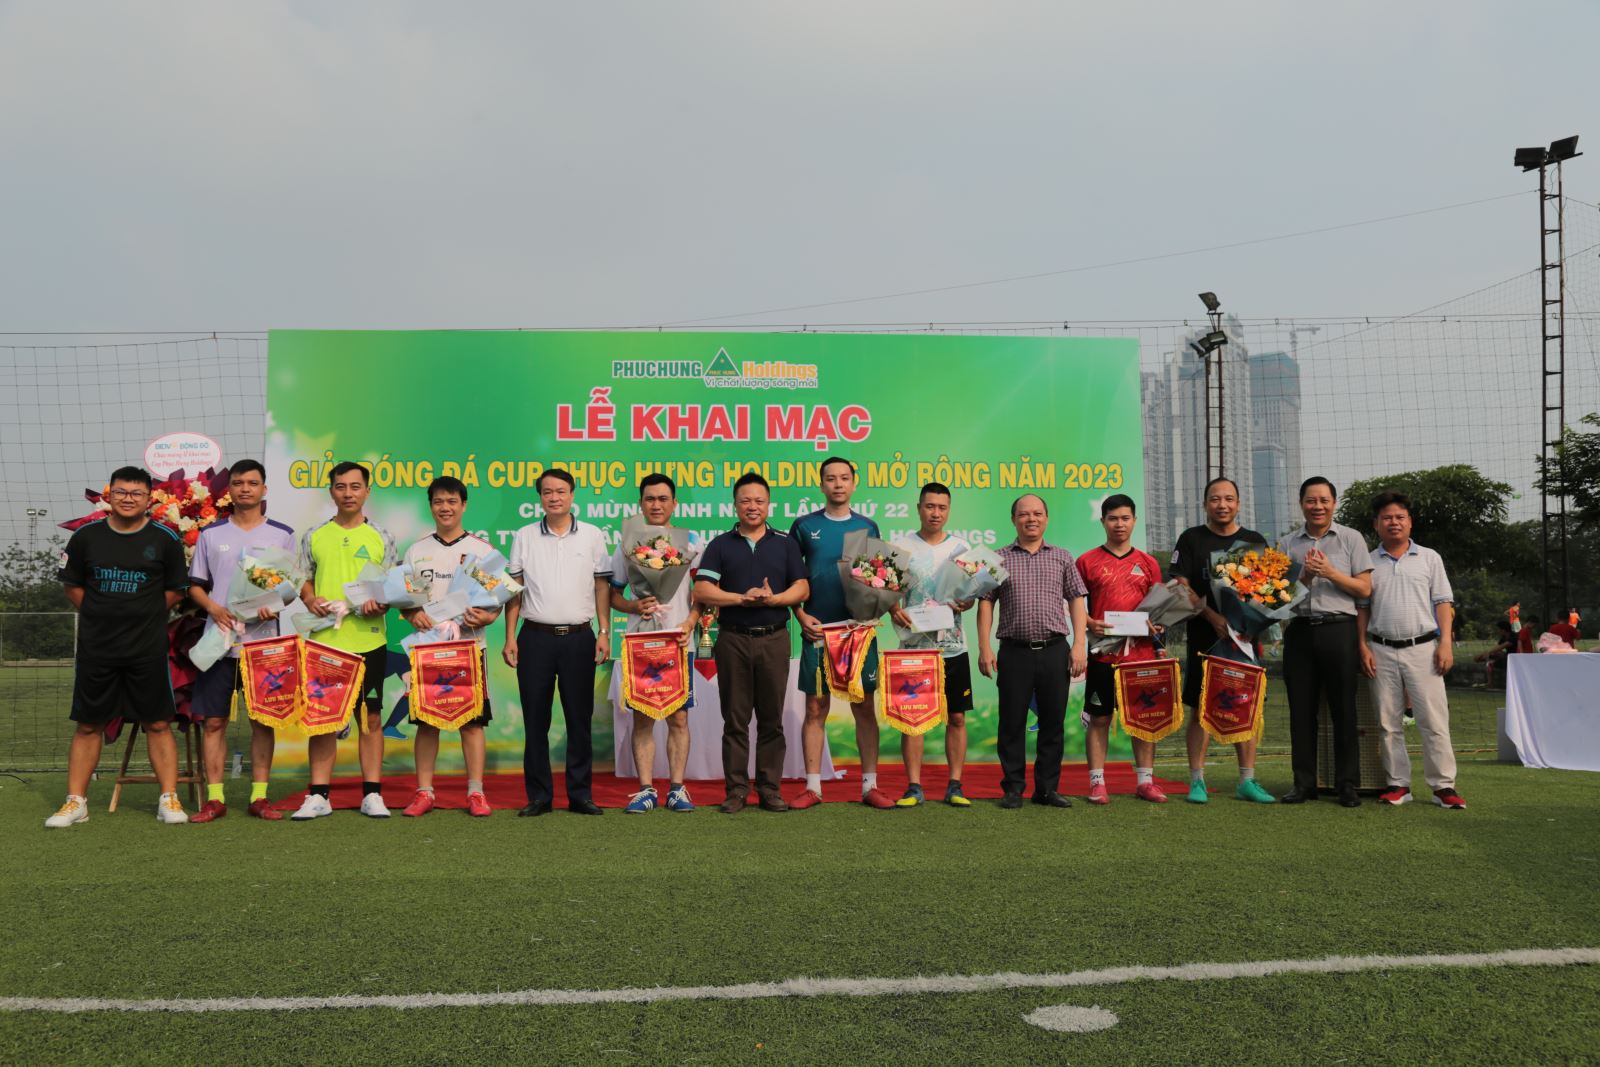 Khai mạc giải bóng đá “Cup Phục Hưng Holdings mở rộng năm 2023” chào mừng kỷ niệm 22 năm ngày thành lập Phục Hưng Holdings